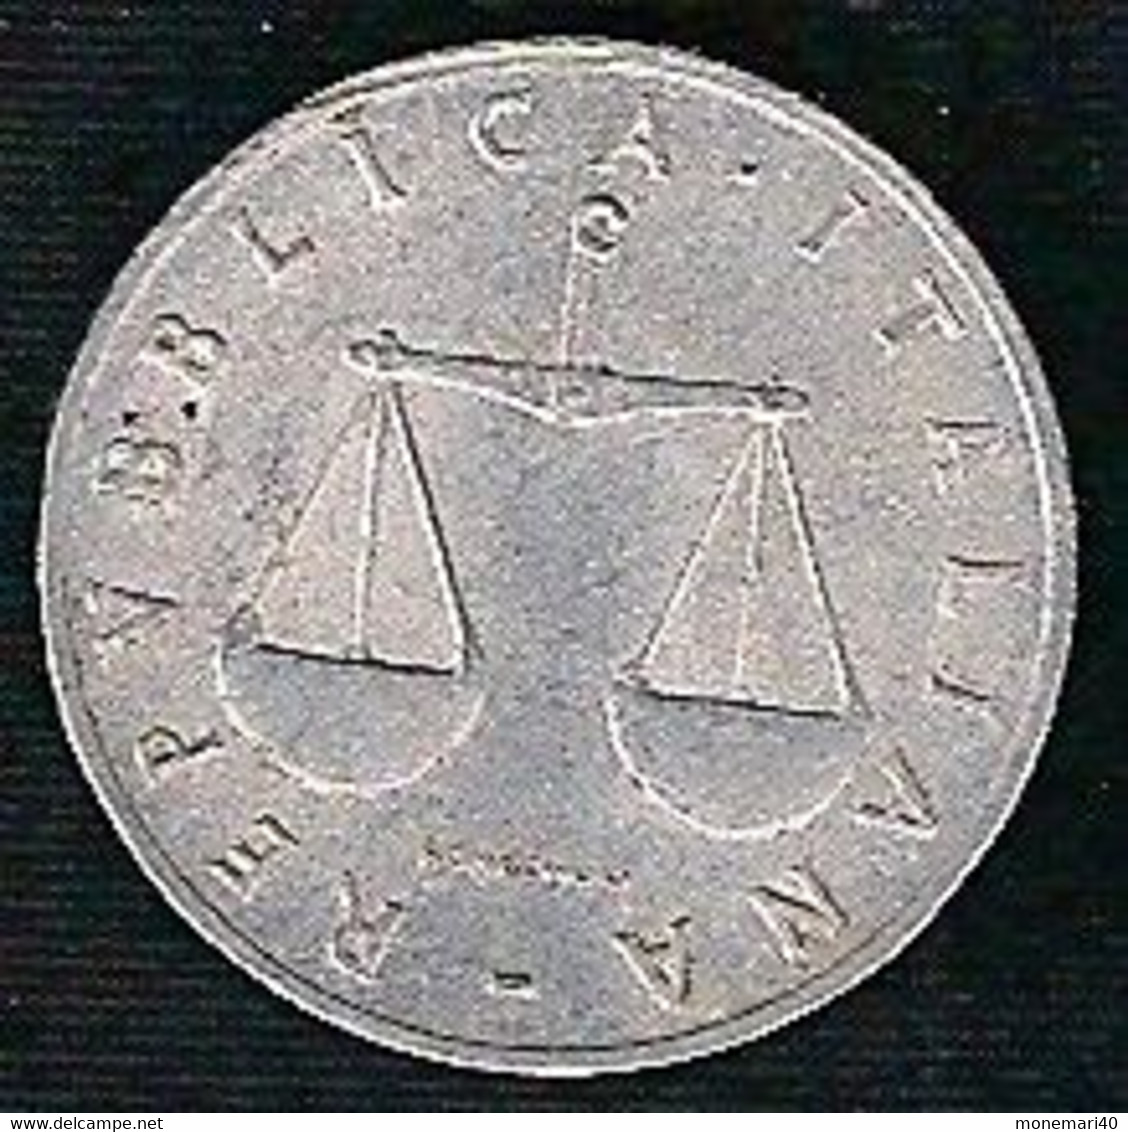 ITALIE 1 LIRE - 1955 - 1 Lira